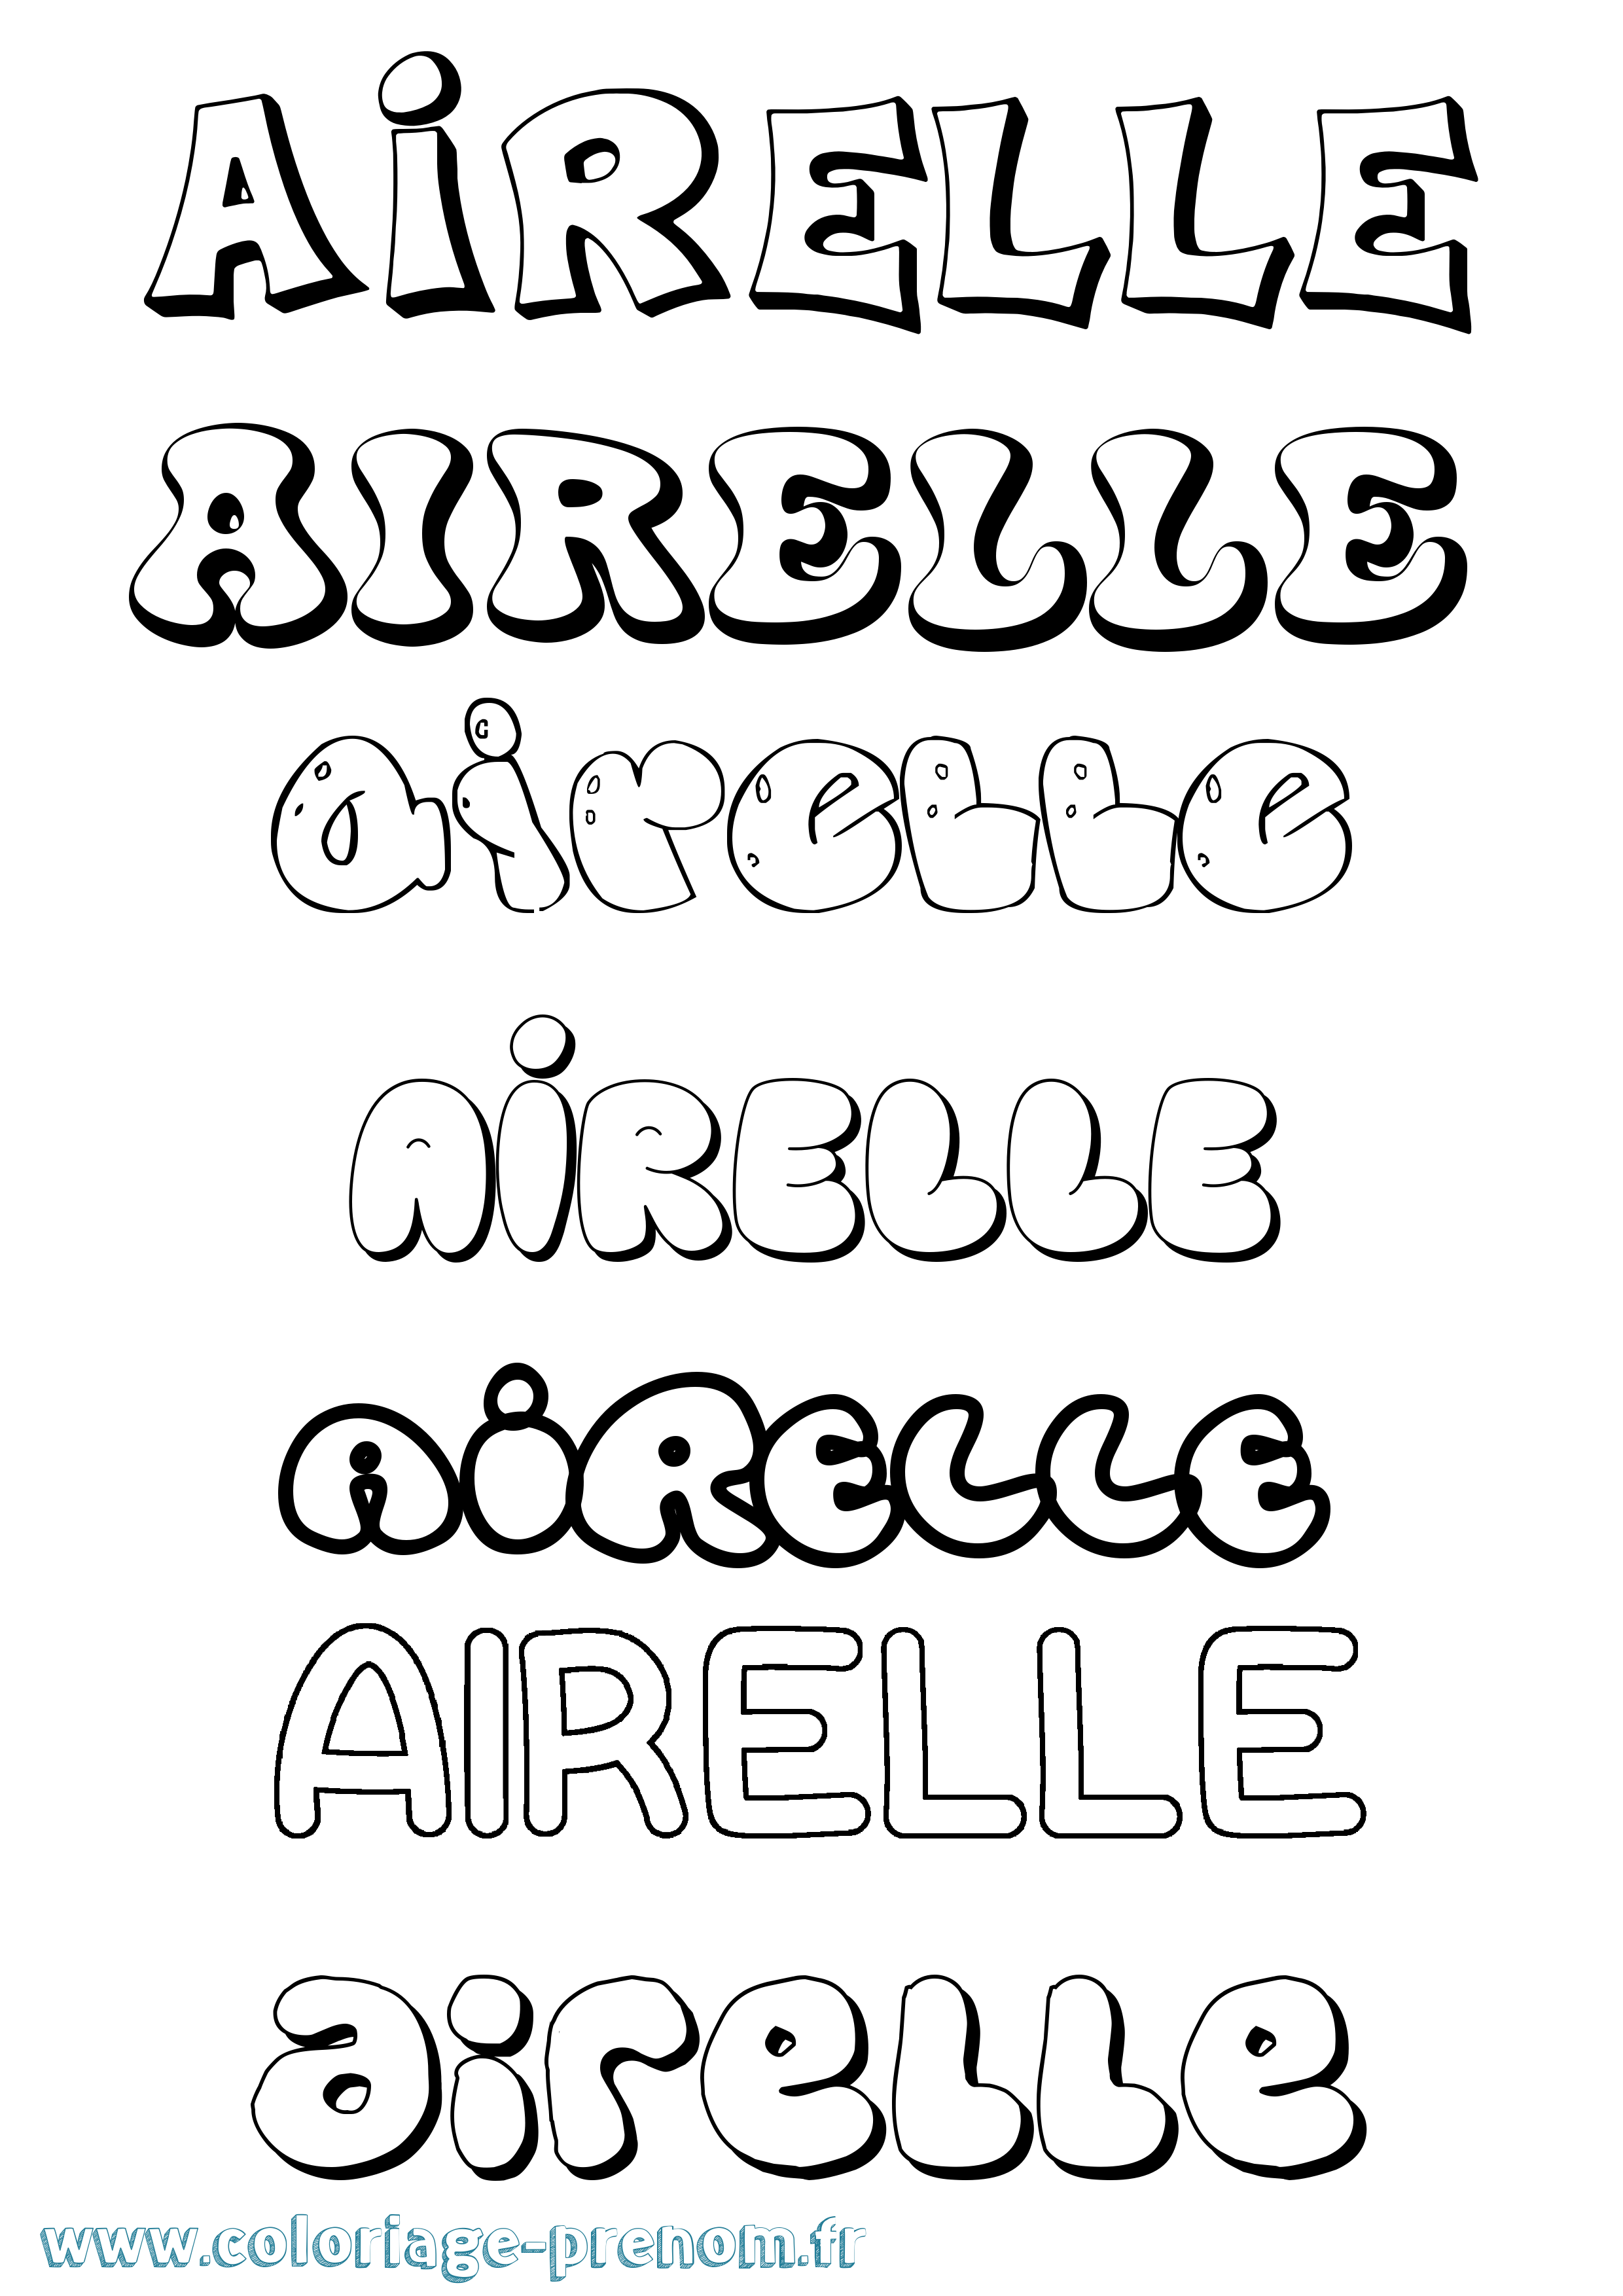 Coloriage prénom Airelle Bubble